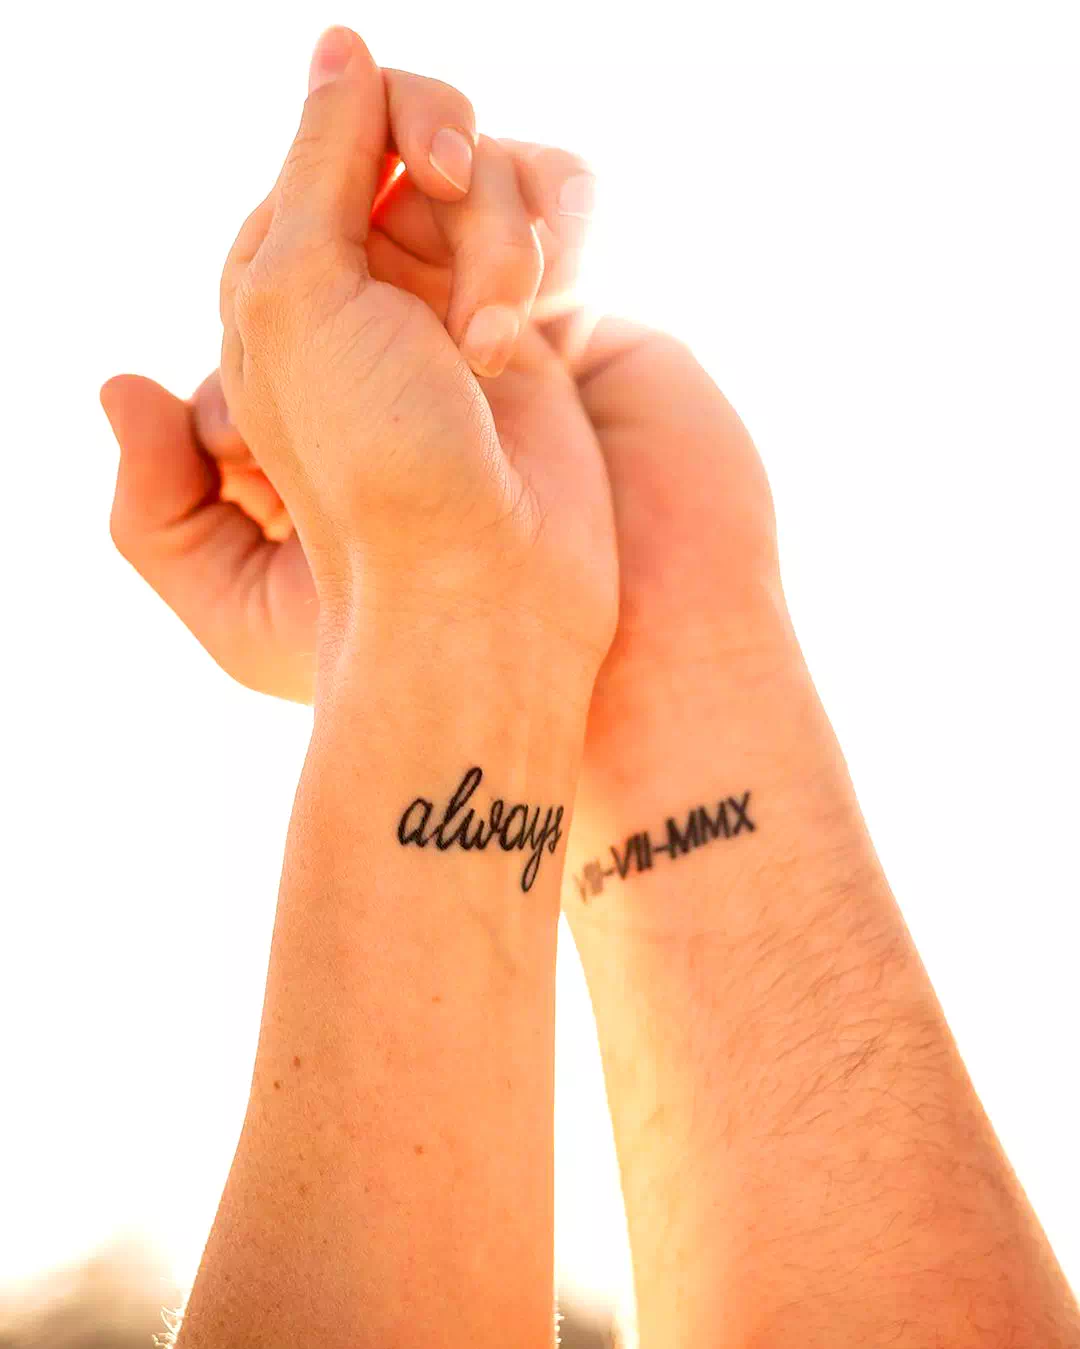 Tatuaje de alianzas con palabras significativas 3